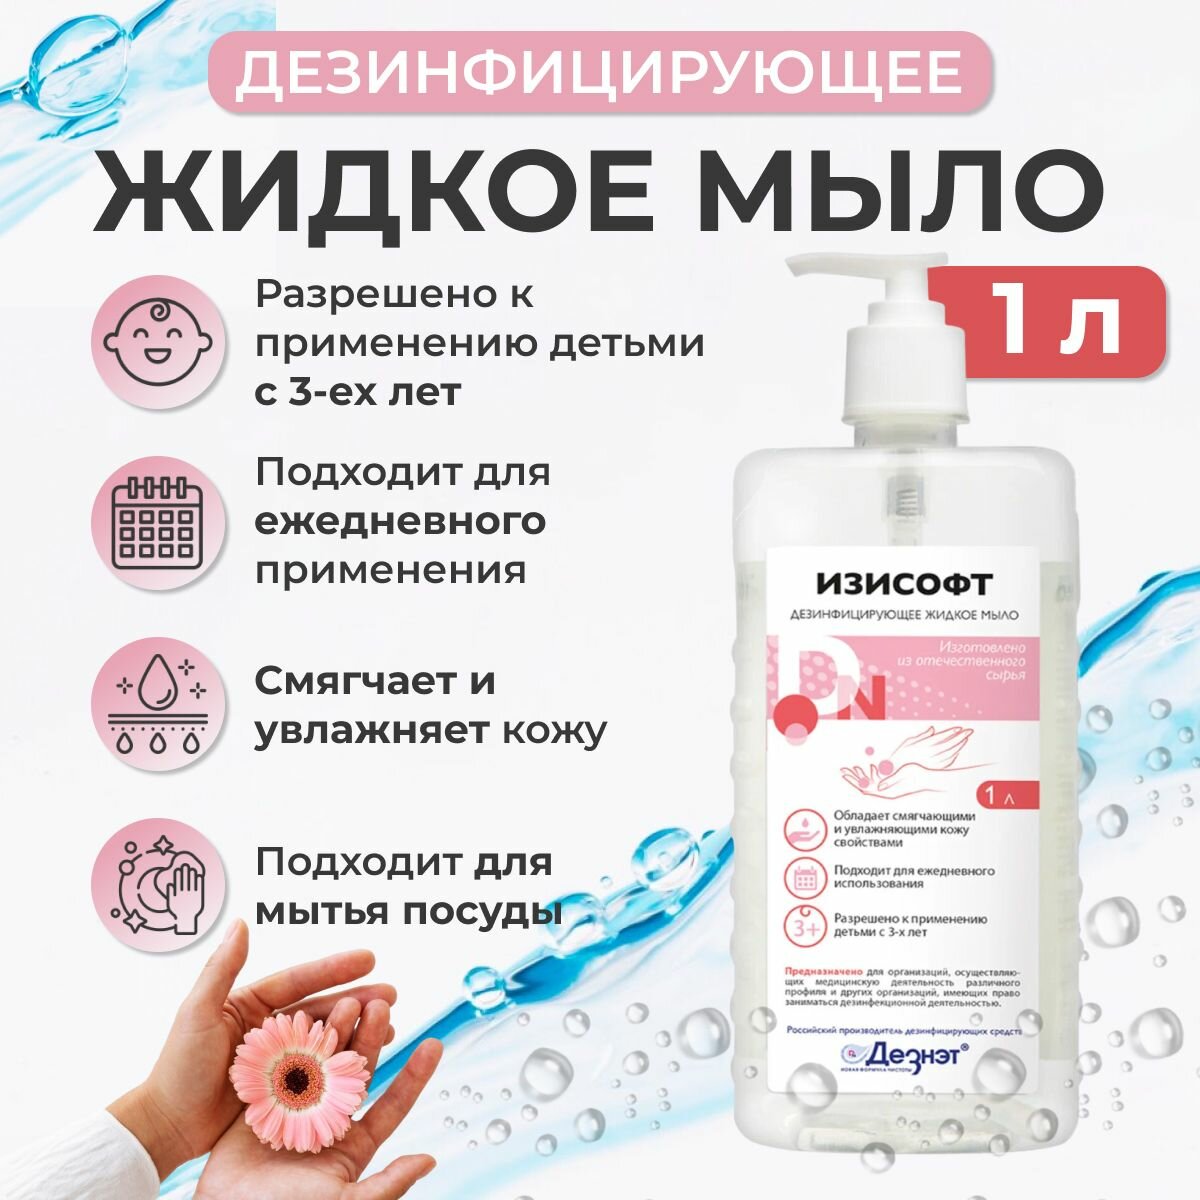 Изисофт жидкое мыло дезинфицирующее 1 л